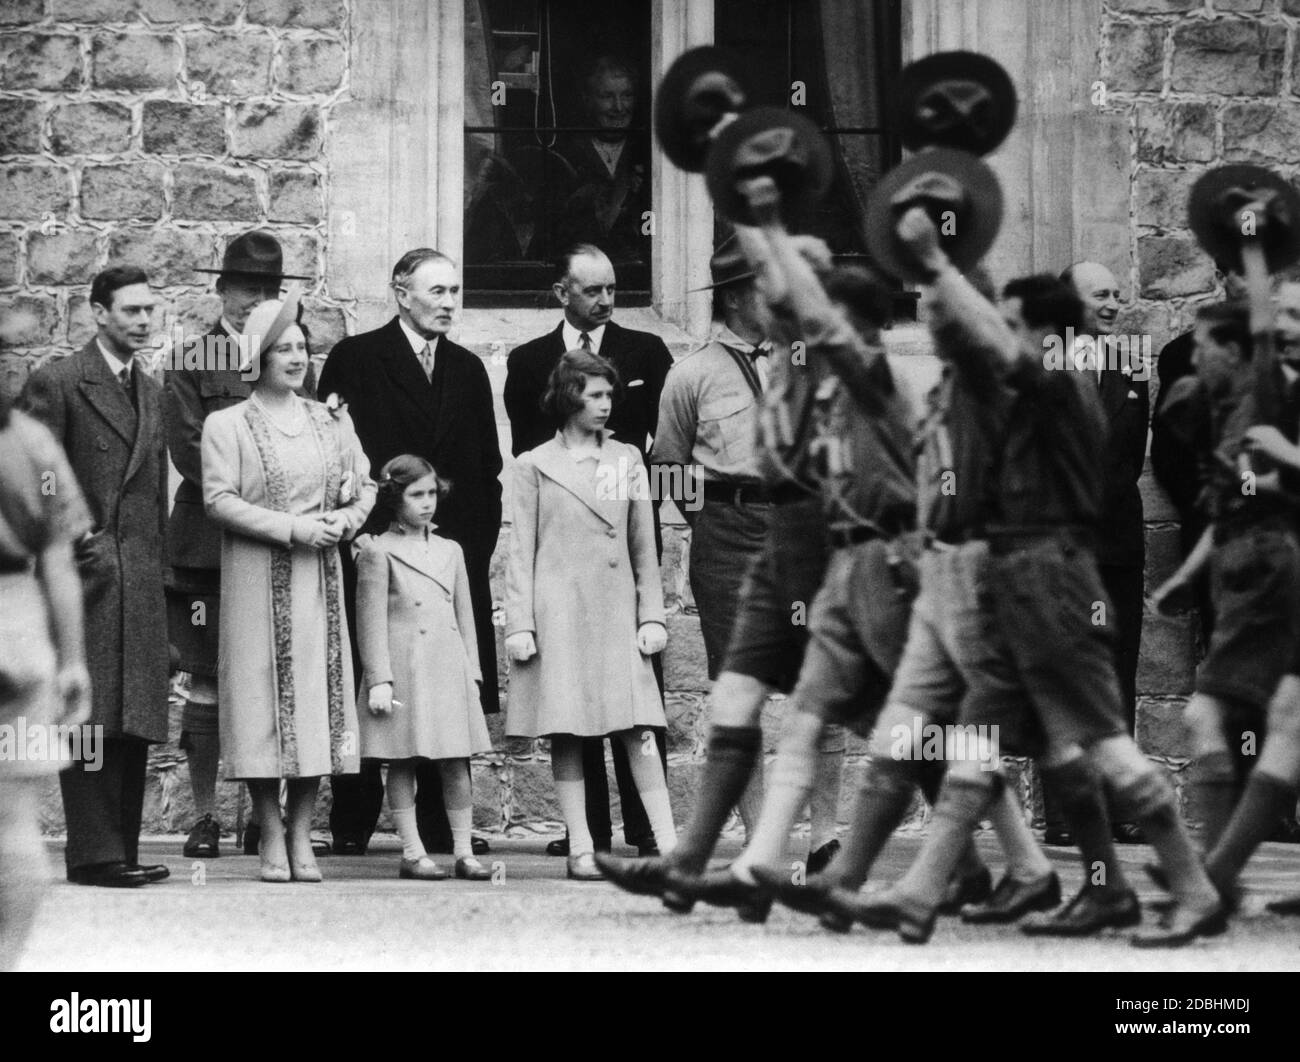 Più di 1000 ragazzi scout passano davanti alla famiglia reale e li salutano. Da sinistra a destra: Re Giorgio VI, la regina Elisabetta, la principessa Elisabetta, la principessa Margaret Rose e l'arcivescovo di Canterburry. Foto Stock